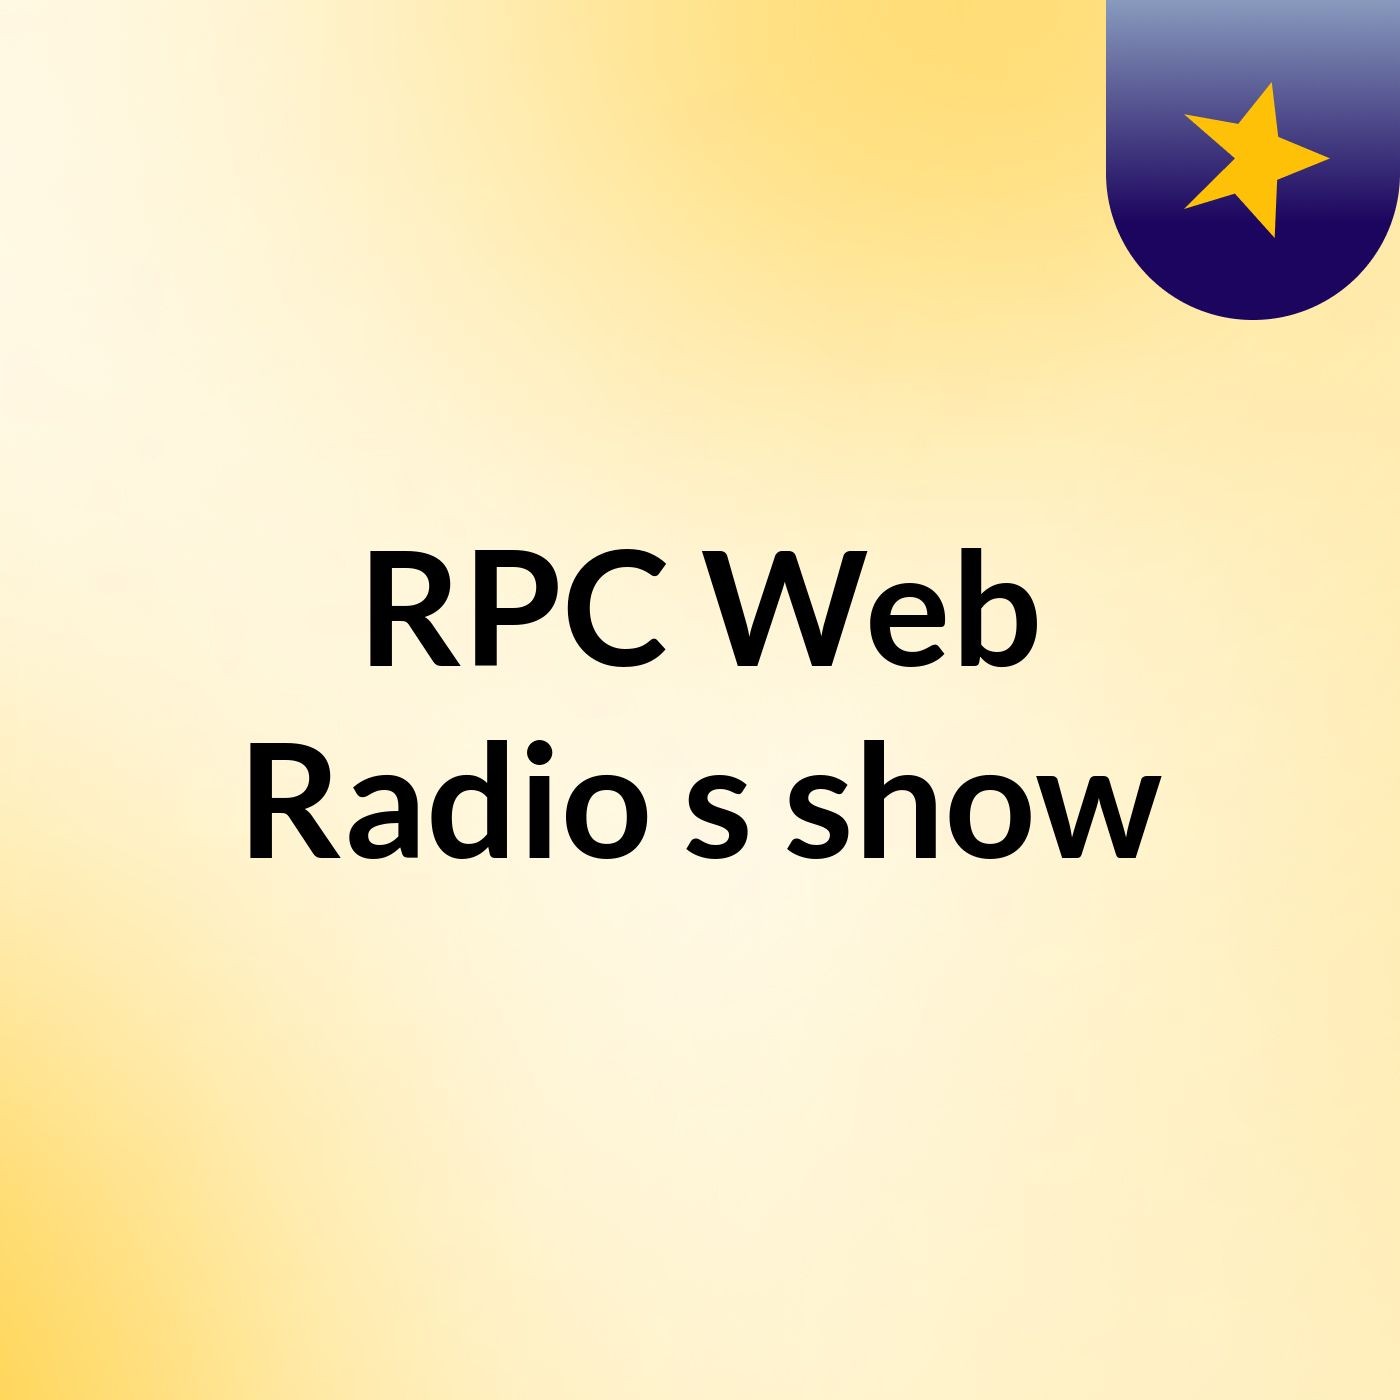 RPC Web Radio's show